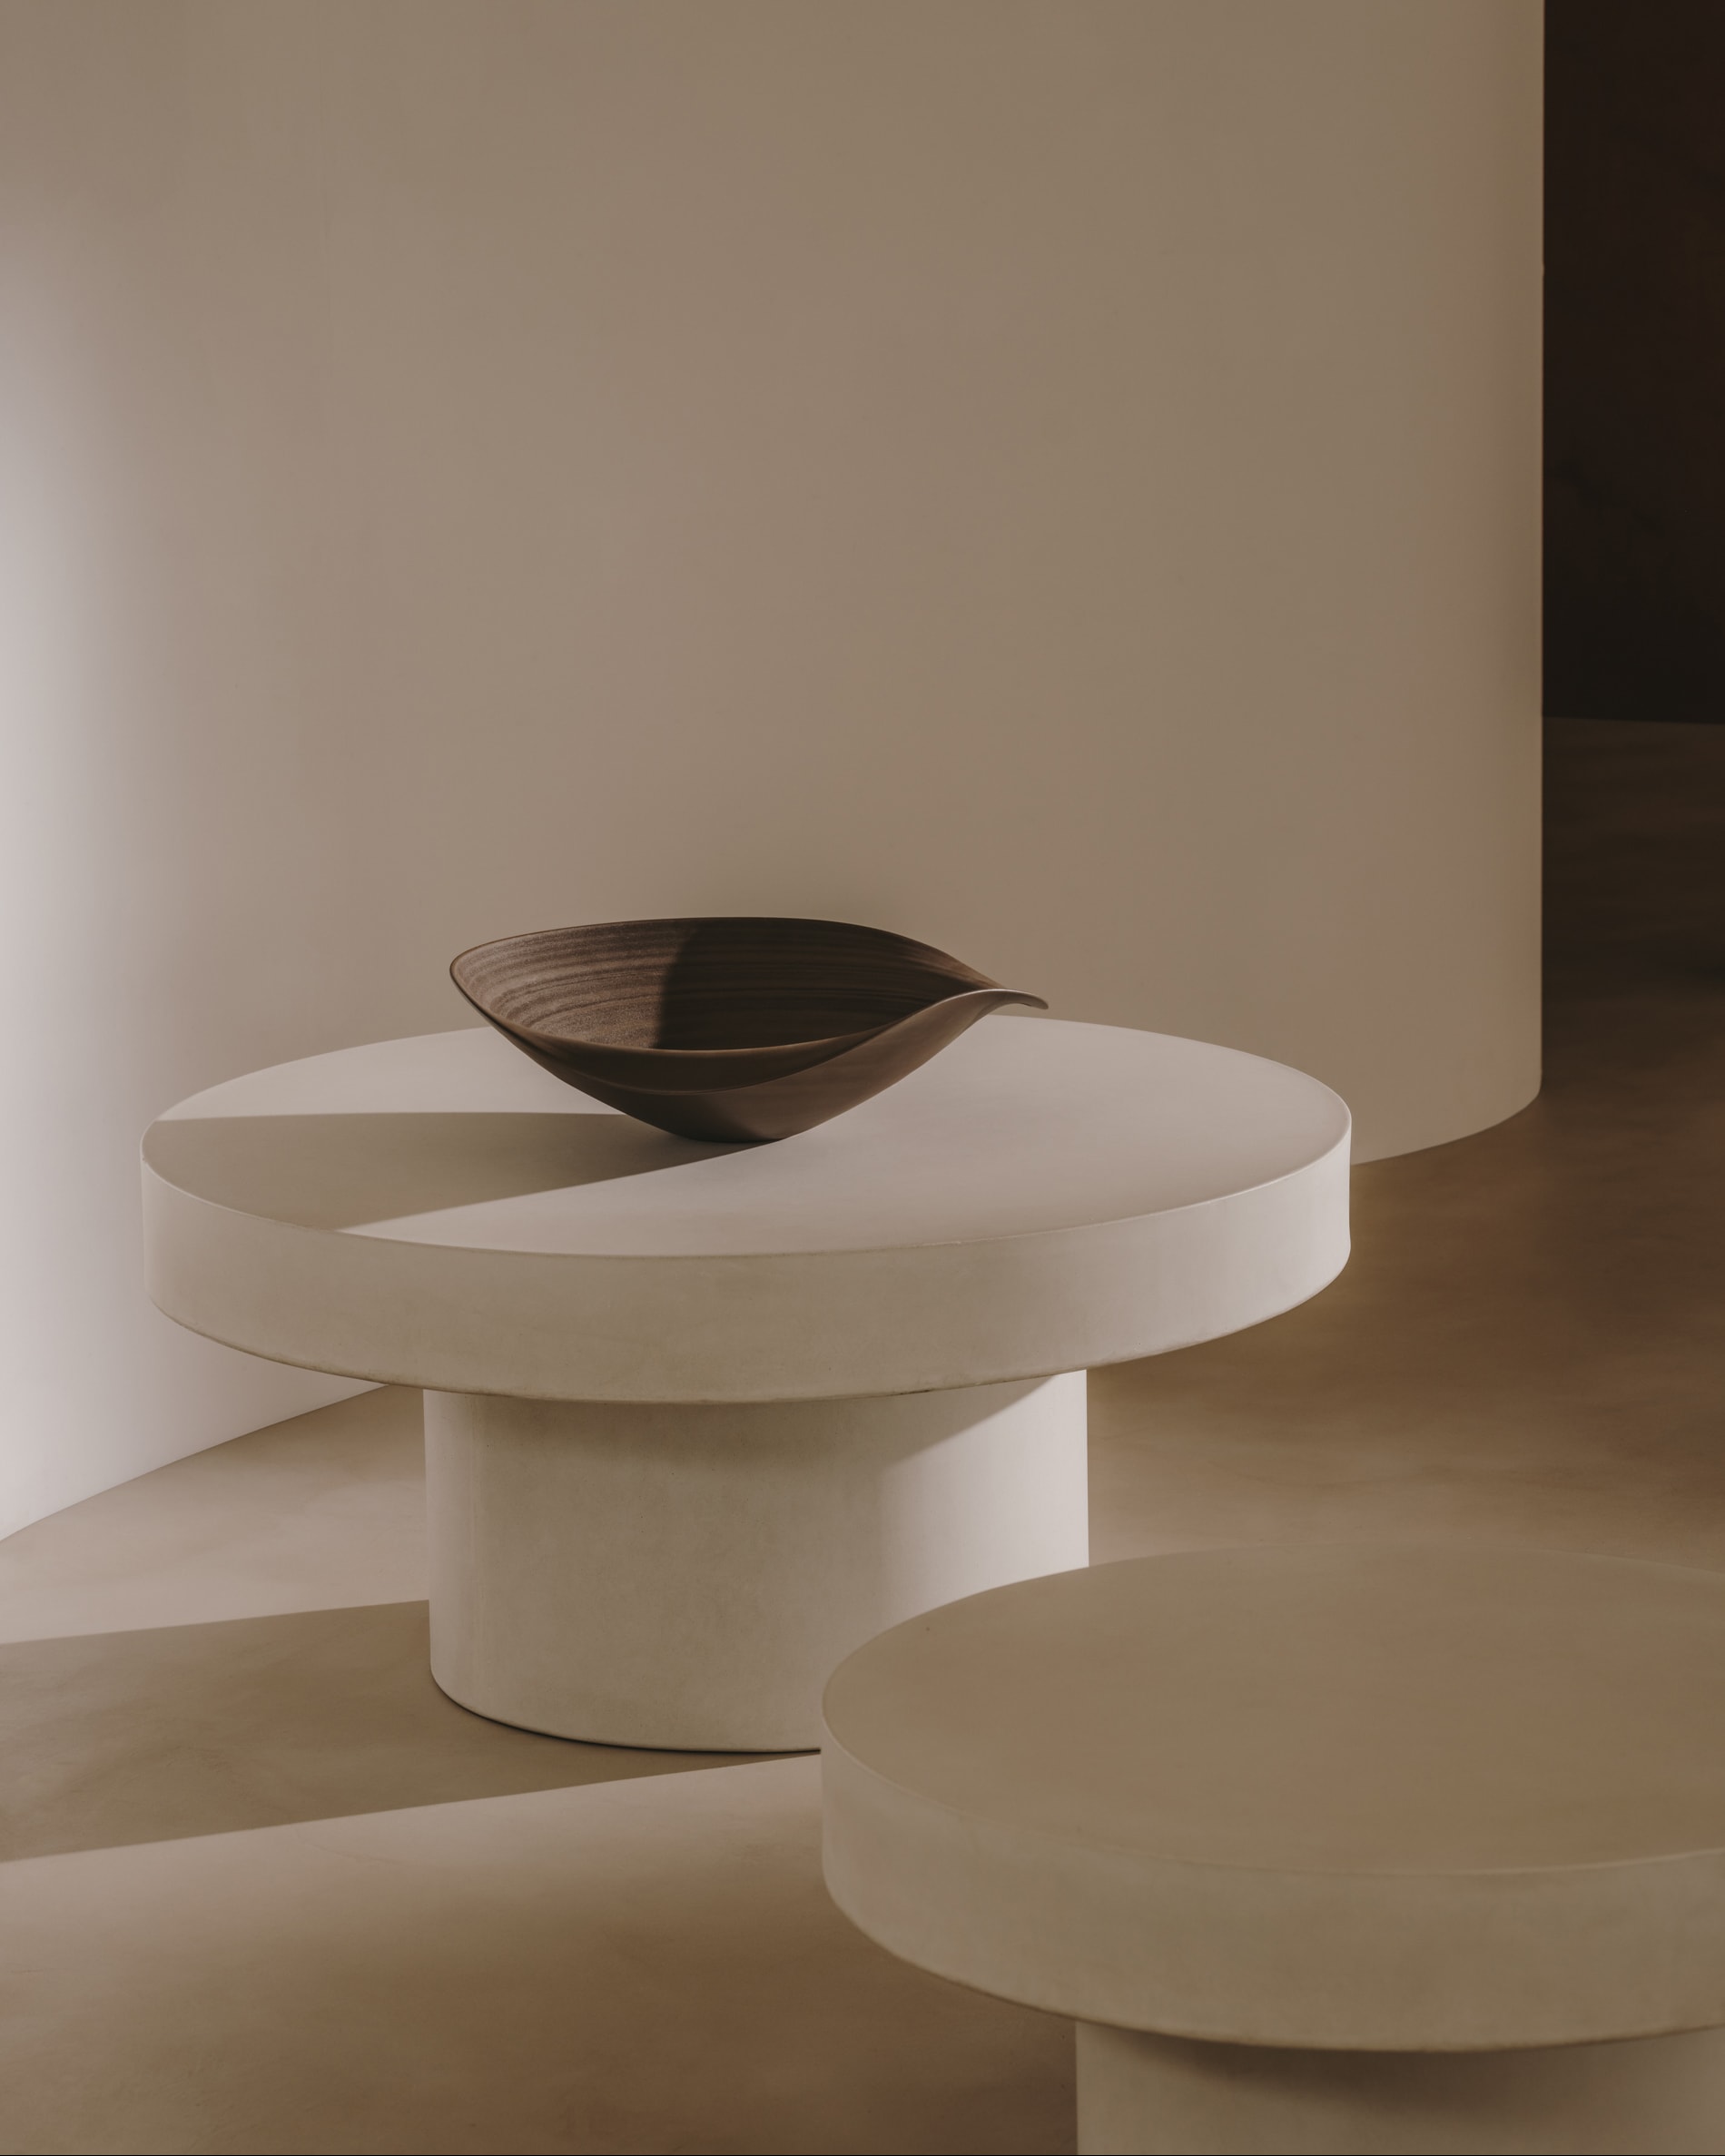 Table basse ronde Aiguablava en ciment blanc Ø 90 cm